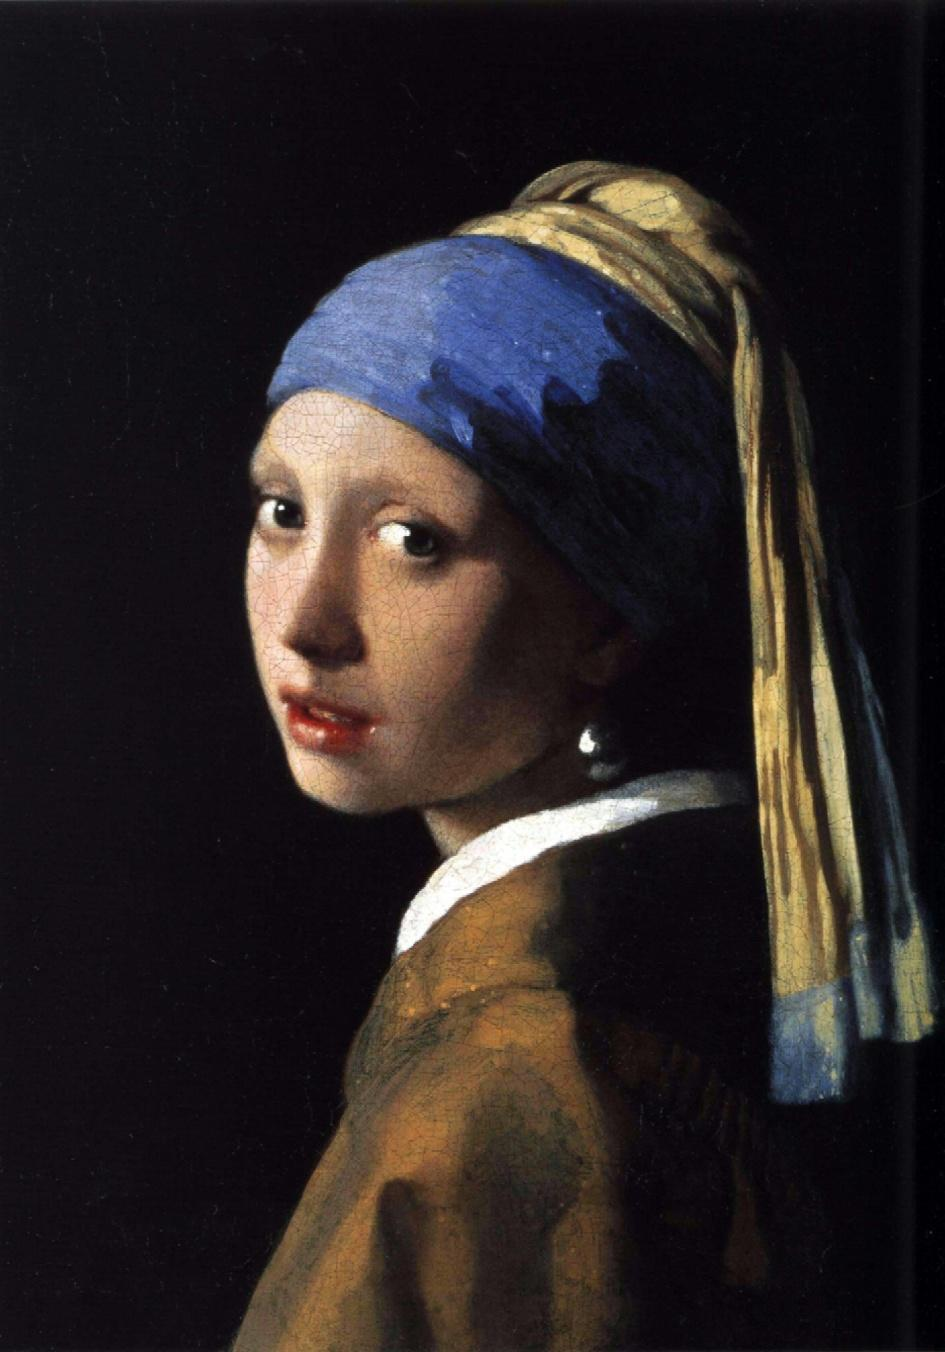 La ragazza con il turbante è uno dei più famosi quadri di Jan Vermeer.